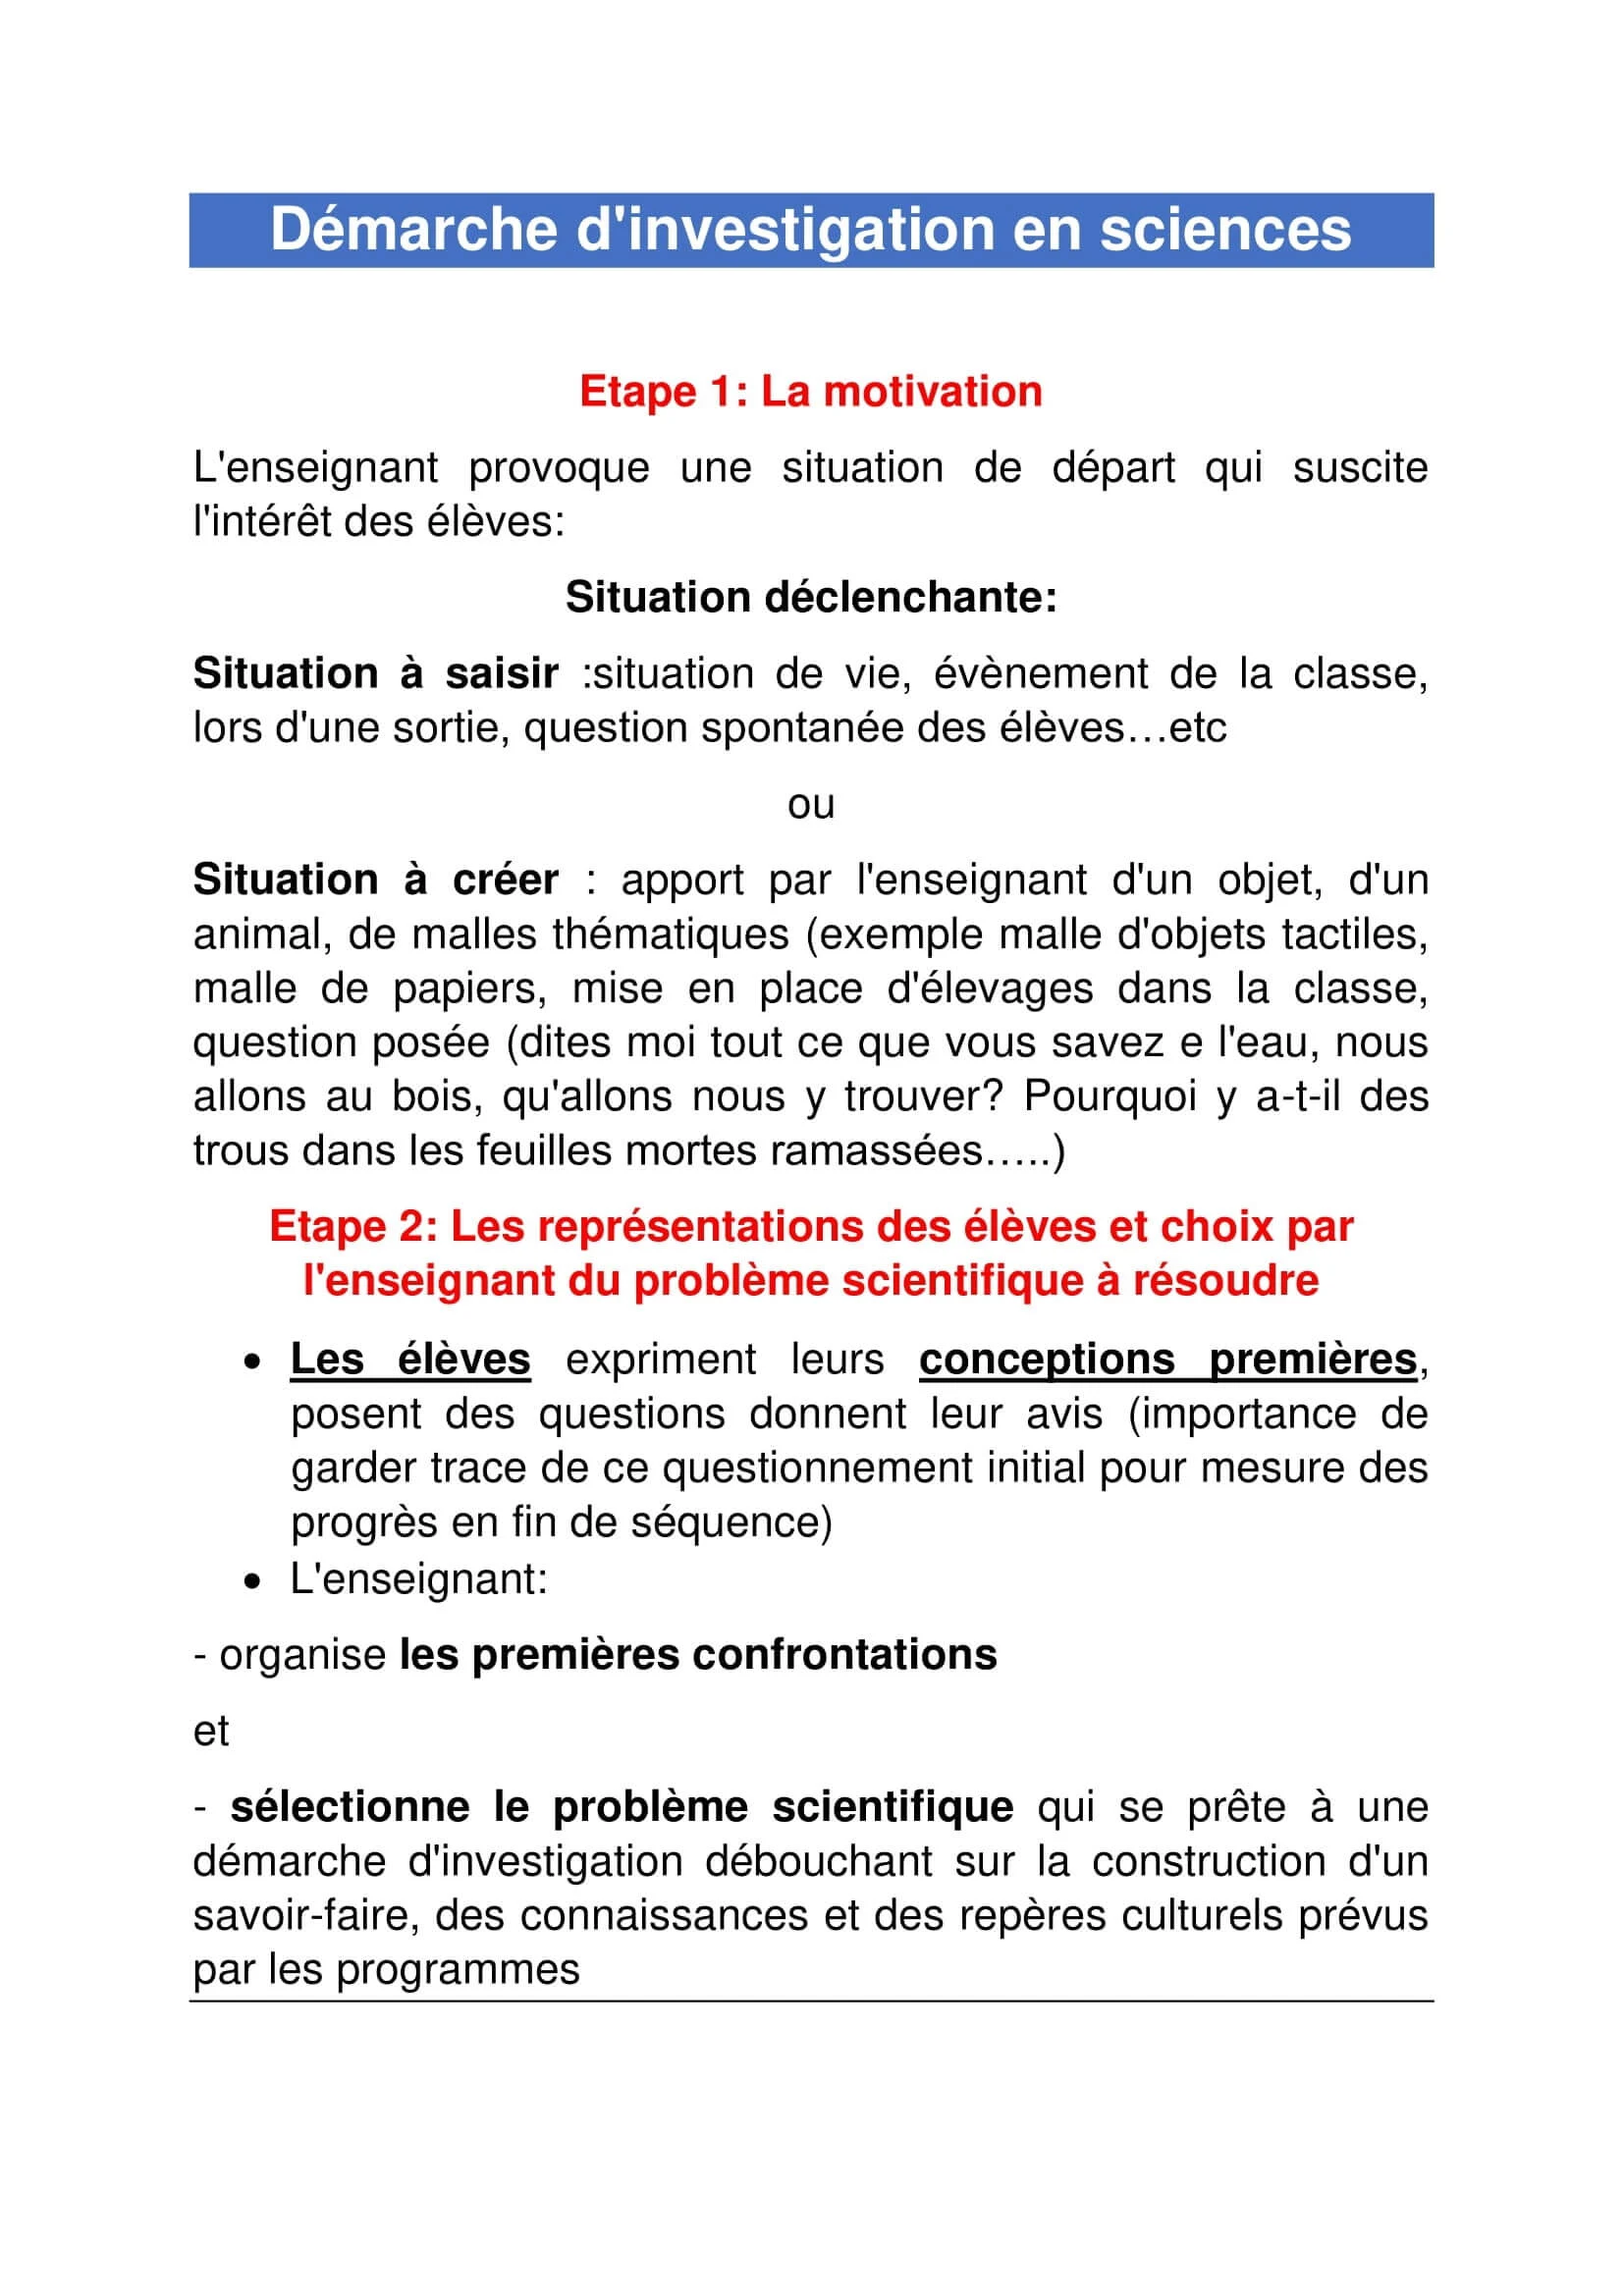 مراحل نهج التقصي النشاط العلمي باللغة الفرنسية